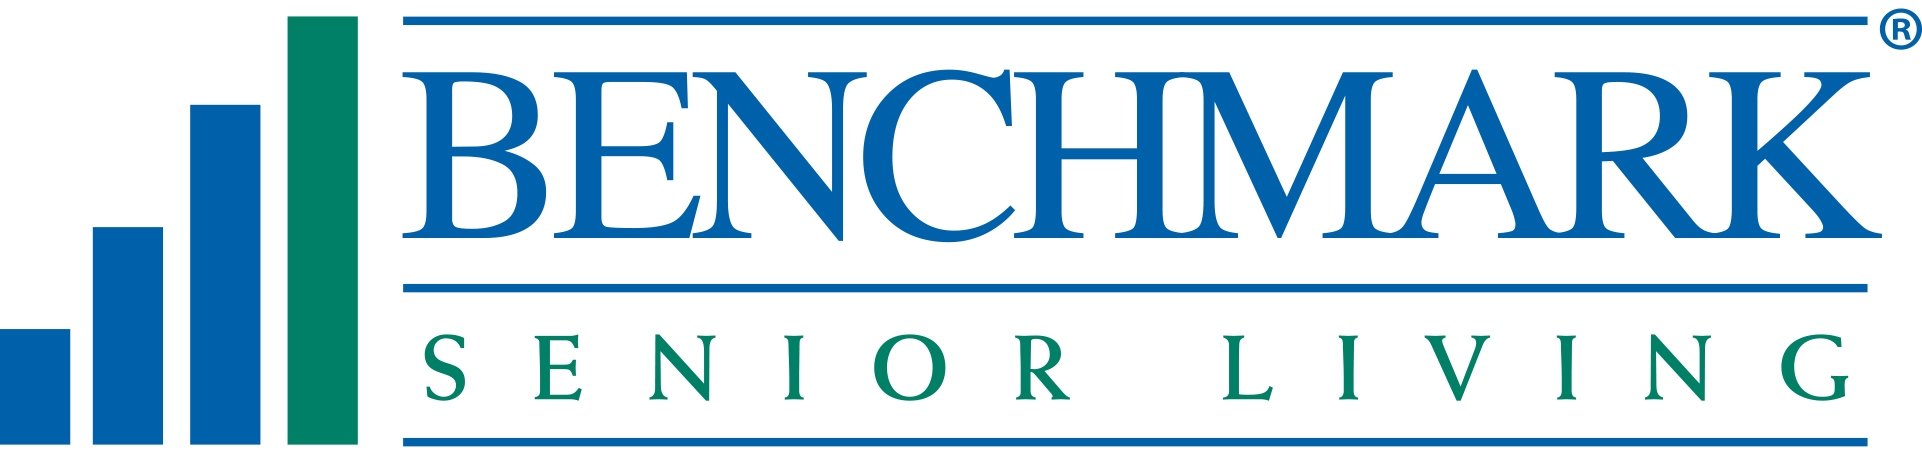 Benchmark Senior Living Company Logo